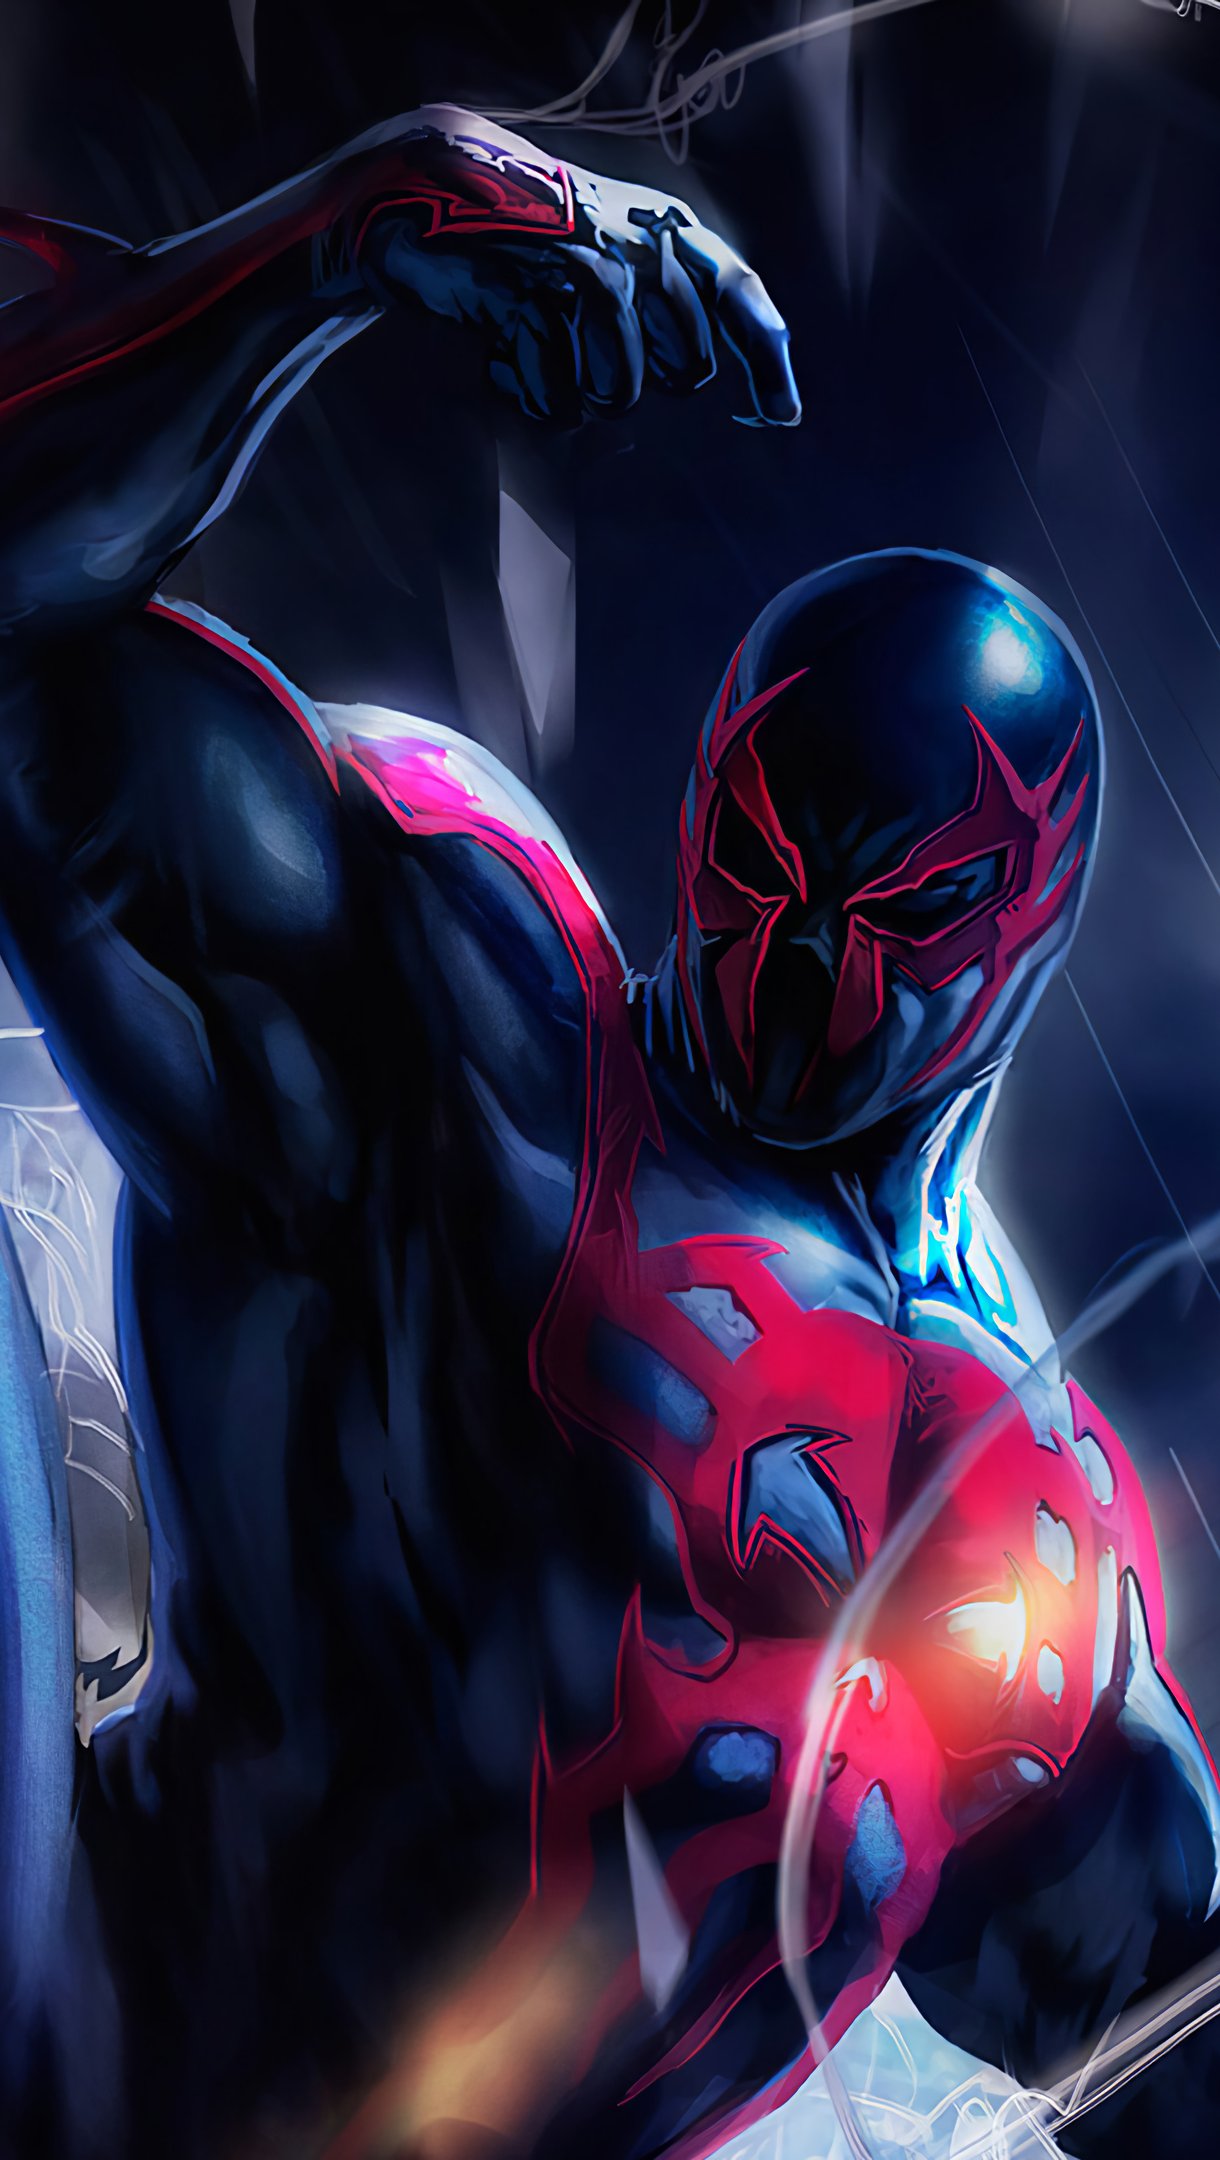 Superhero spiderman wallpaper k ultra hd id